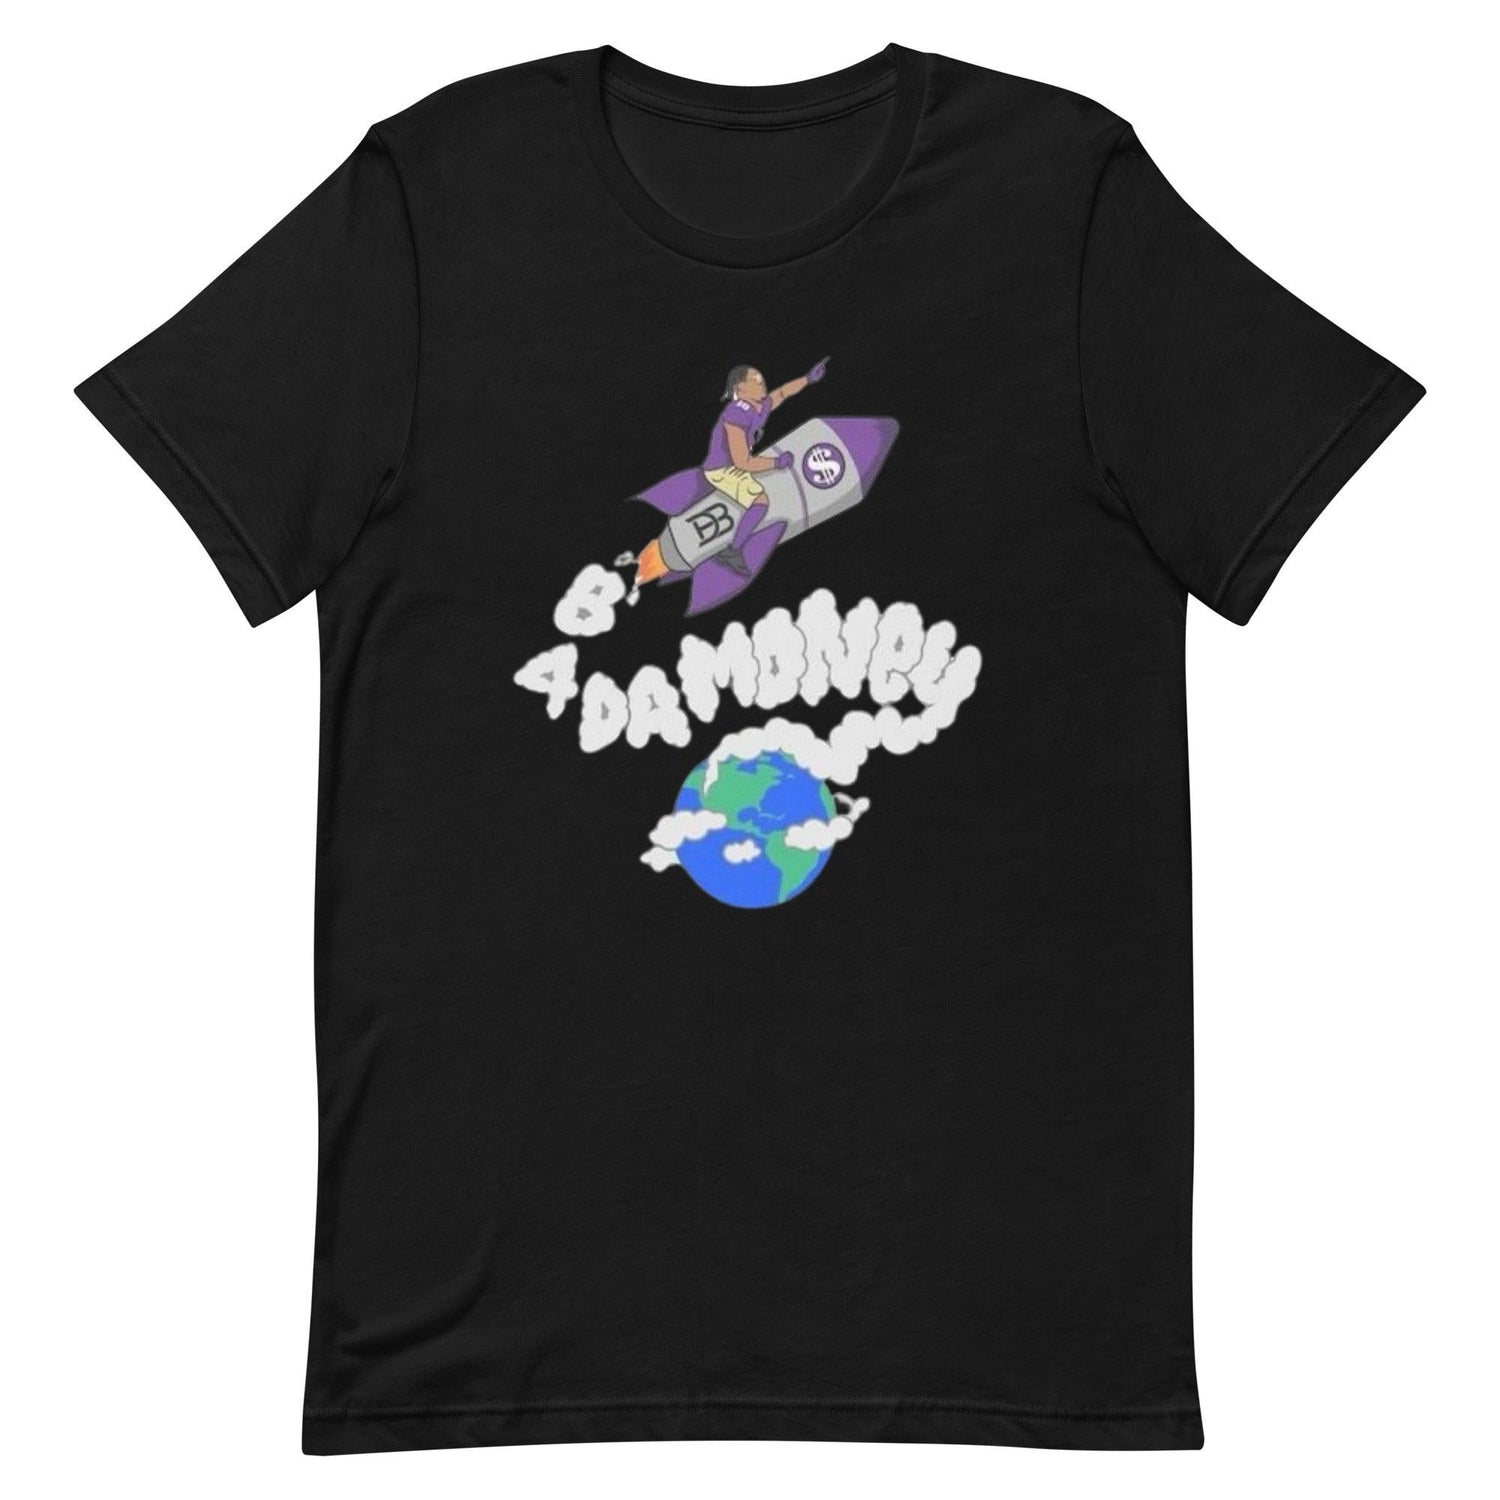 Davon Banks "B 4 DAMONEY" t-shirt - Fan Arch